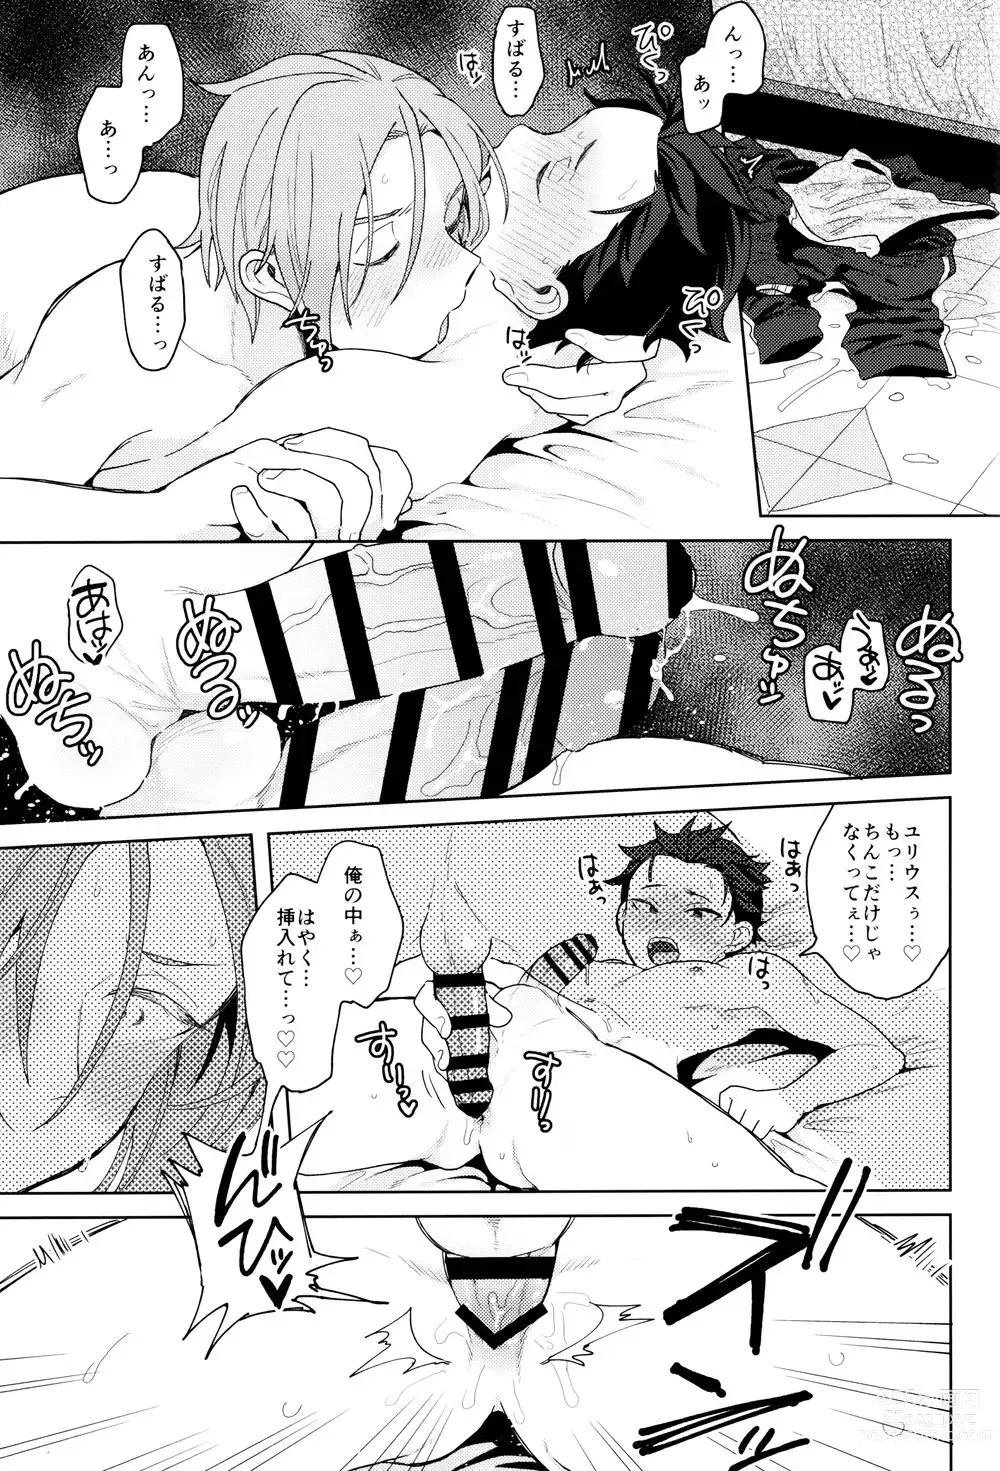 Page 10 of doujinshi Tsui no Sekai ni Kimi to Futari